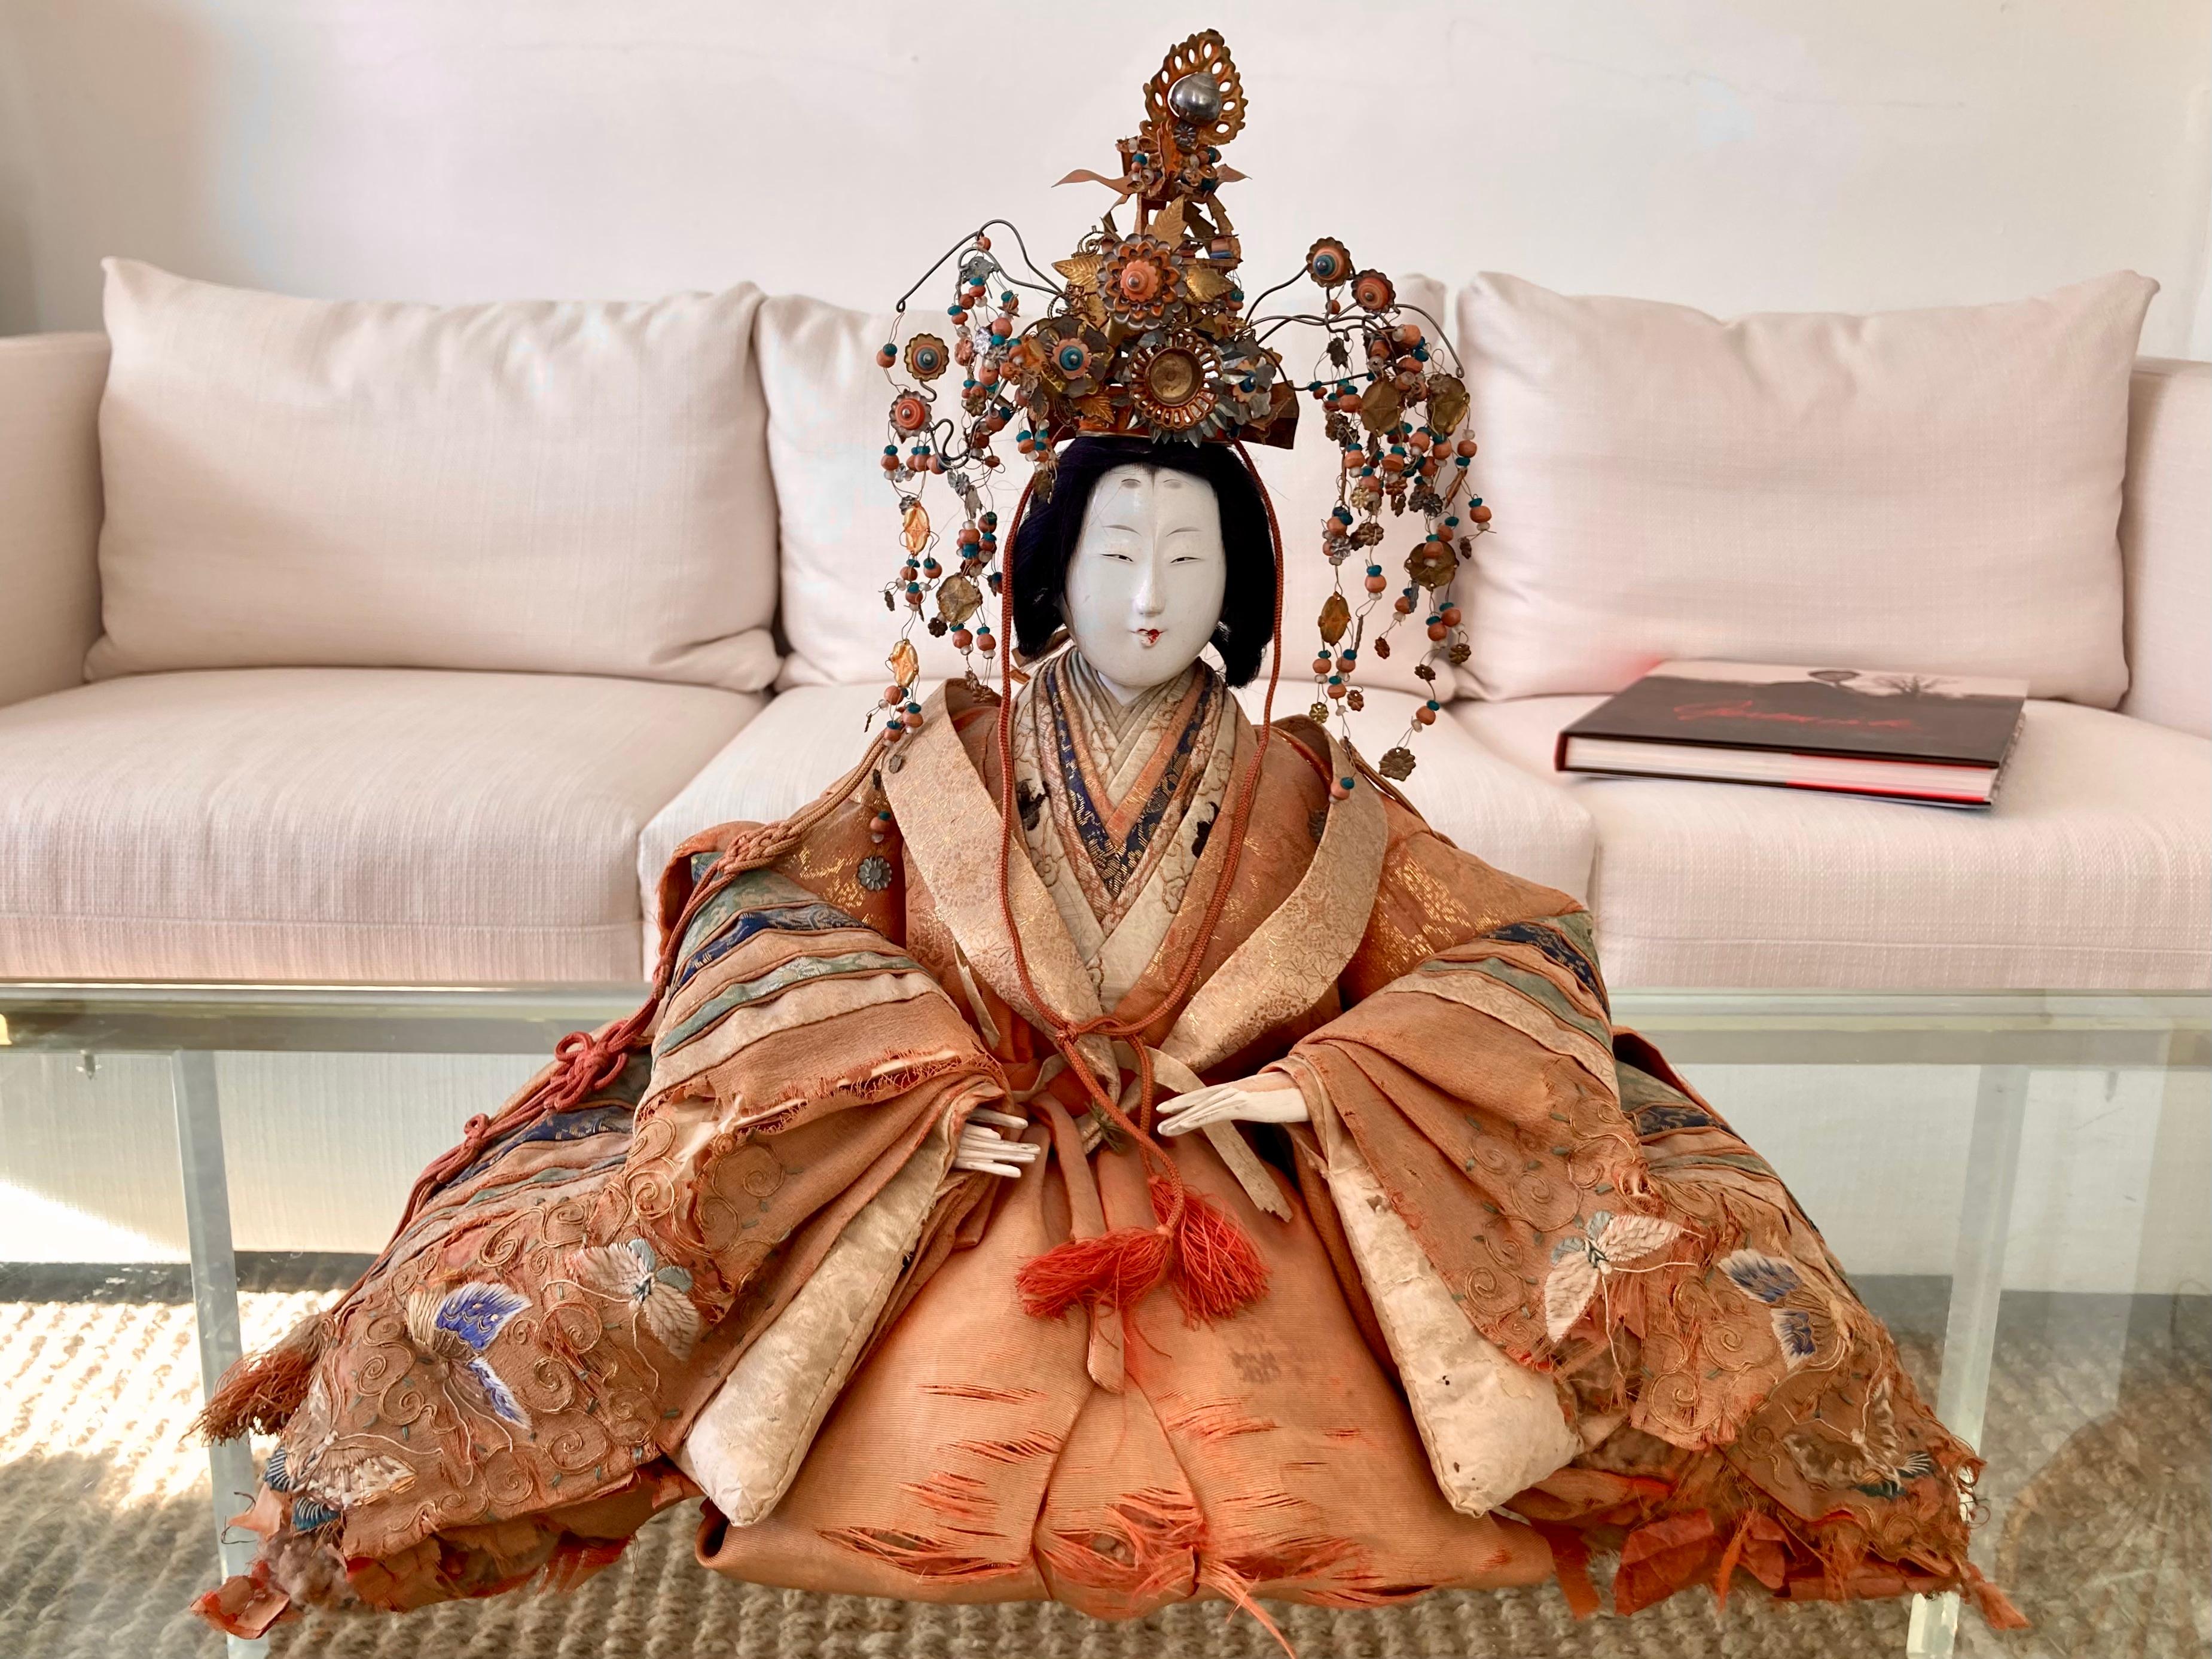 Schöne asiatische Ningyo-Puppe aus dem 19. Jahrhundert mit Kopfkleid. Tolle textile Details. Eine schöne Ergänzung für Ihre klassisch asiatisch inspirierten Innenräume und Tischplatten.